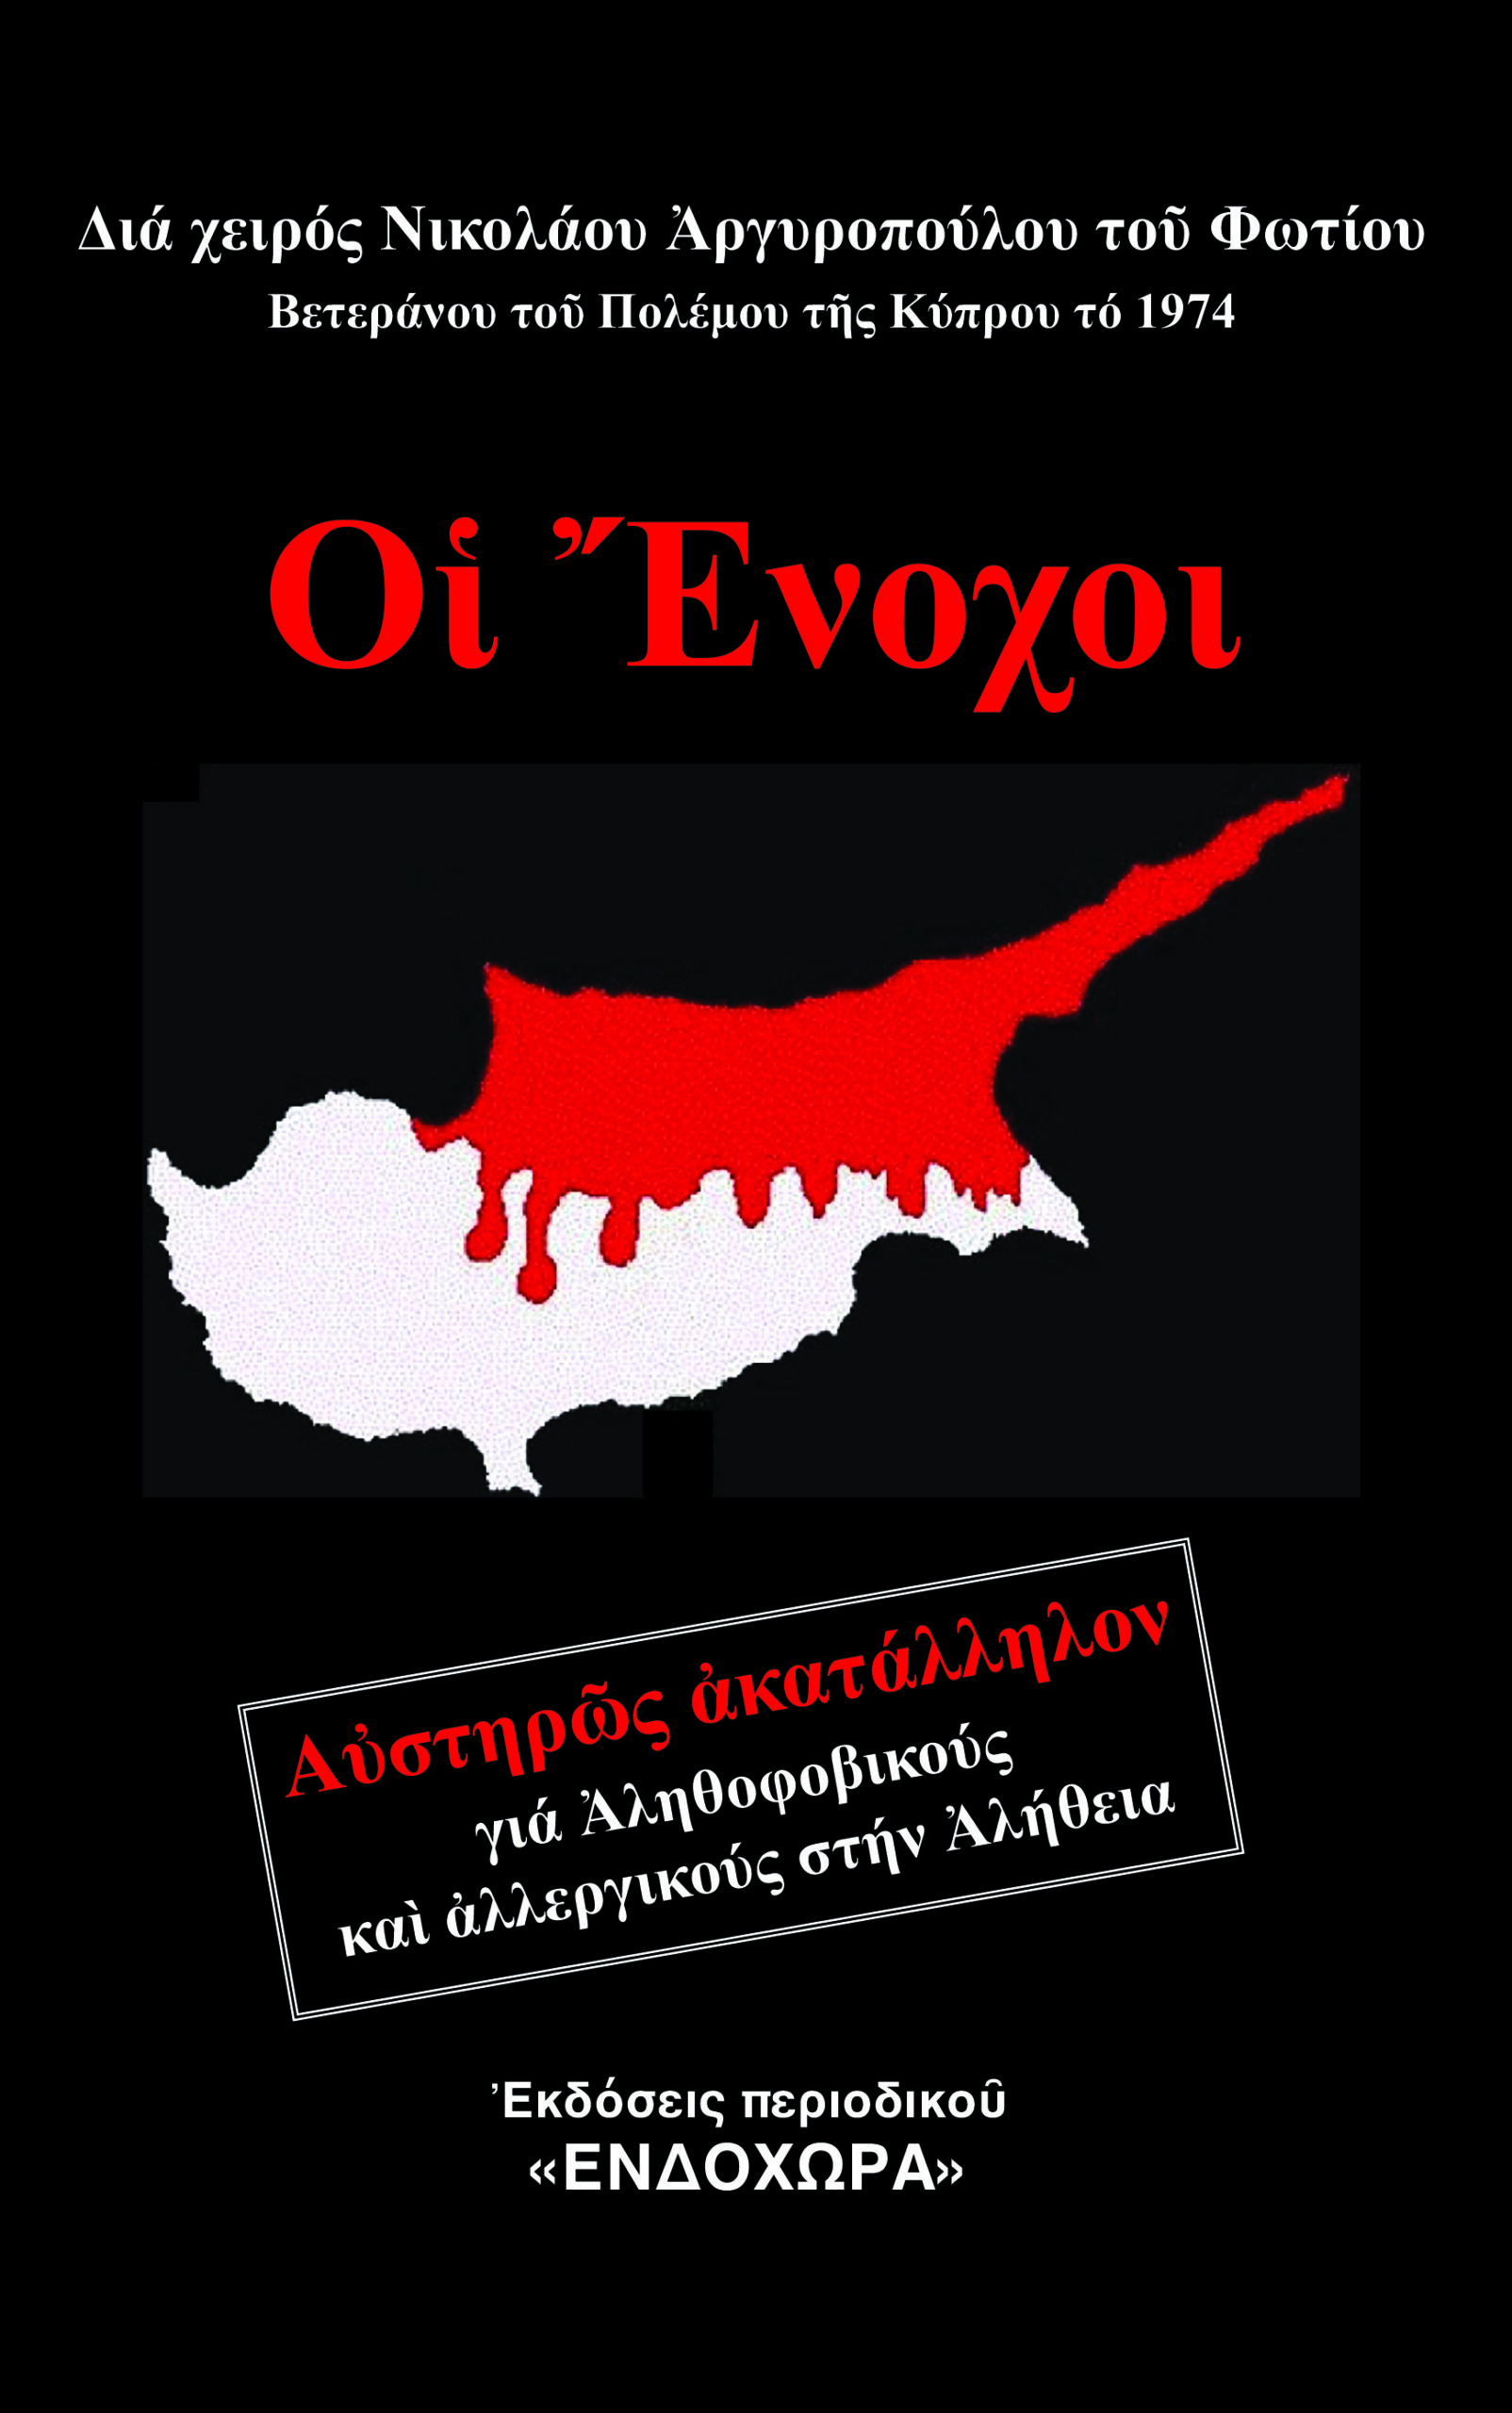 «Οι Ένοχοι». Ο βετεράνος του Πολέμου της Κύπρου Νικόλαος Αργυρόπουλος, αποκαλύπτει ΟΛΗ ΤΗΝ ΑΛΗΘΕΙΑ.